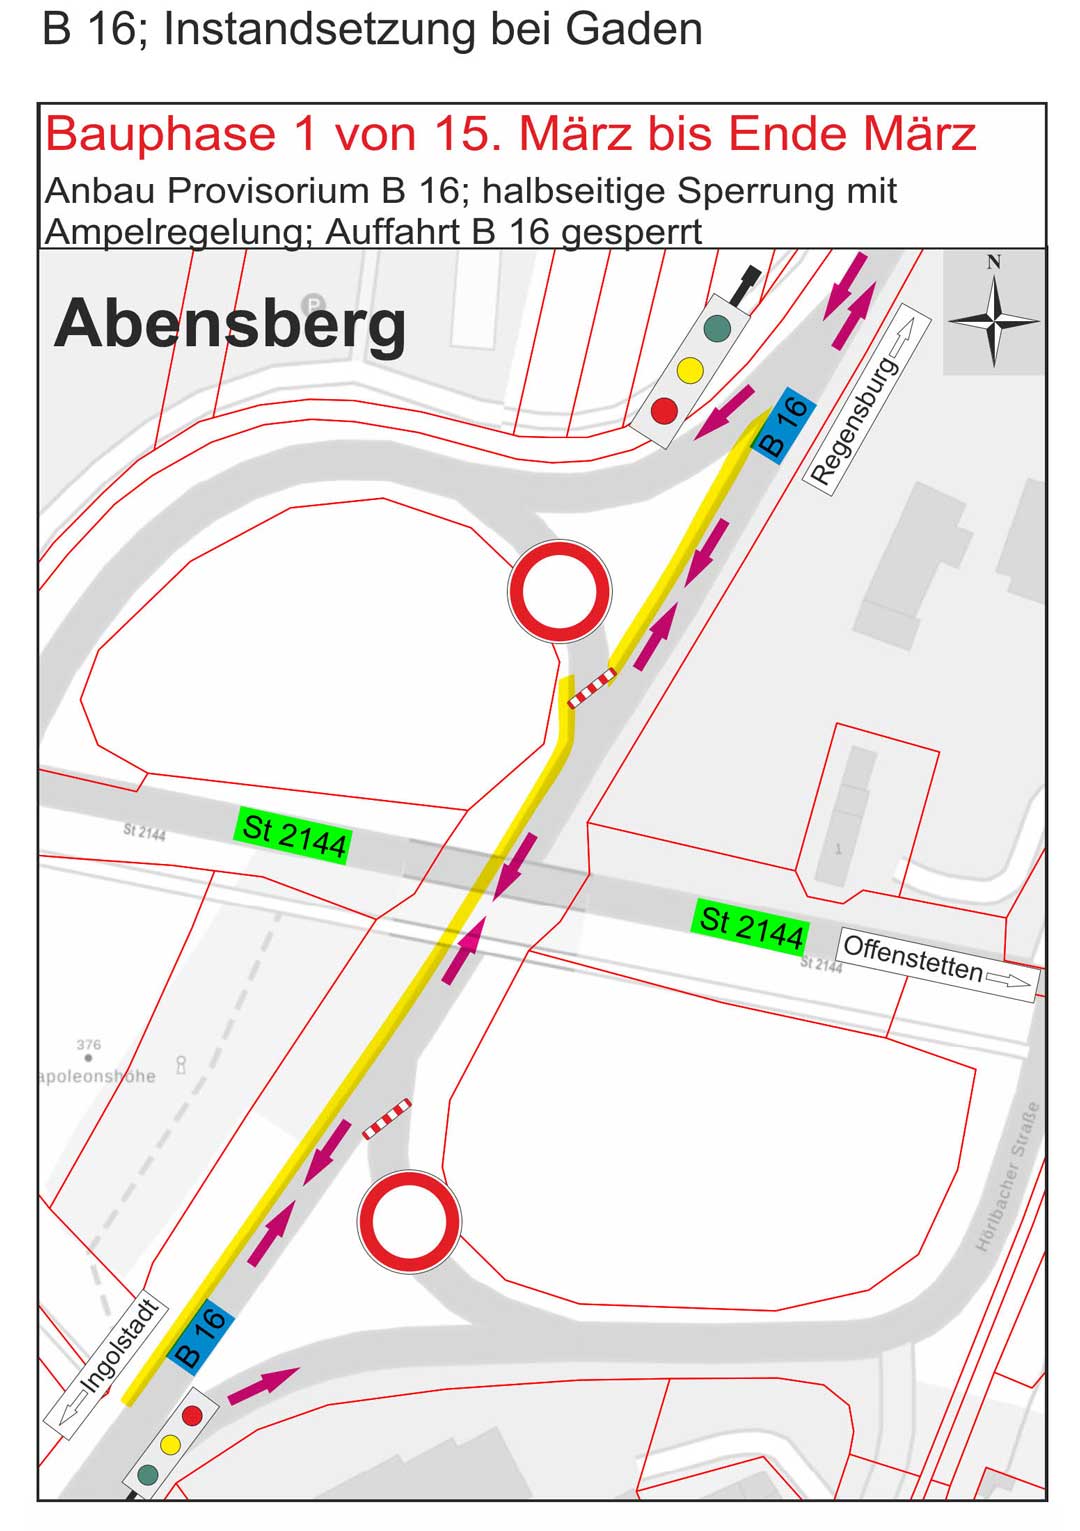 B16 Instandsetzung Abensberg Gaden (Grafik: Staatliches Bauamt Landshut)